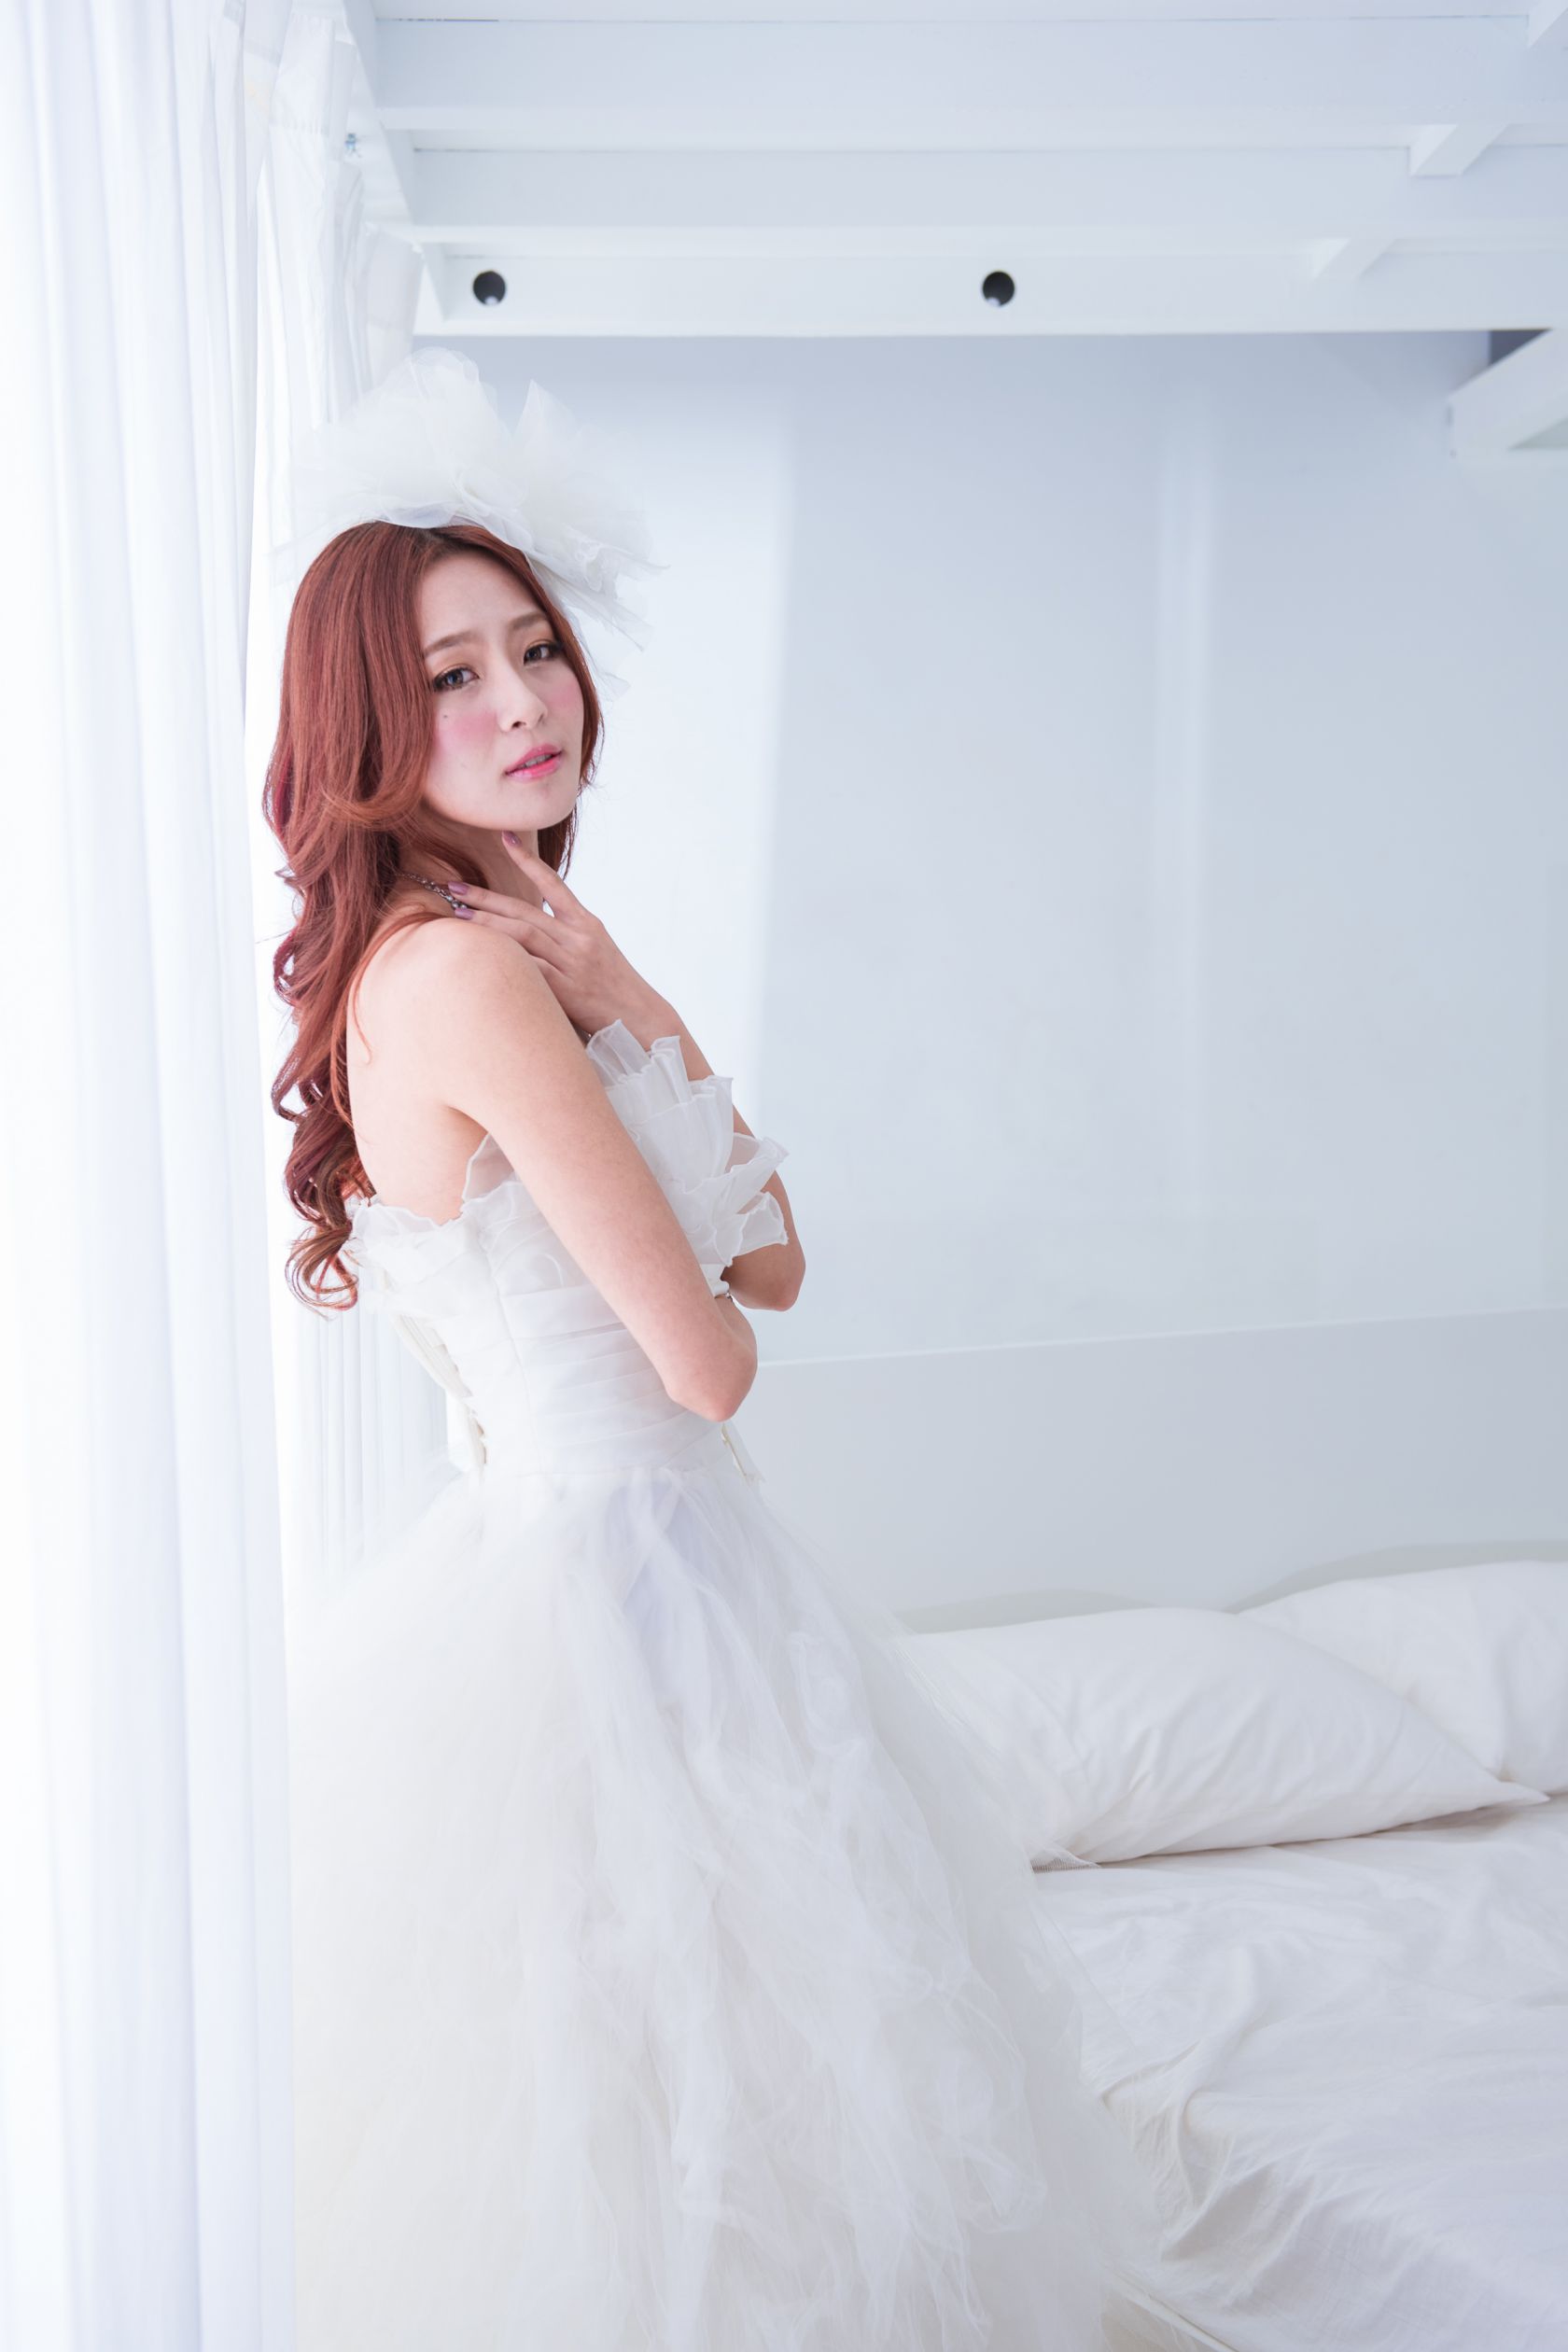 台湾美女模特Winnie小雪 - 超高清婚紗場图集